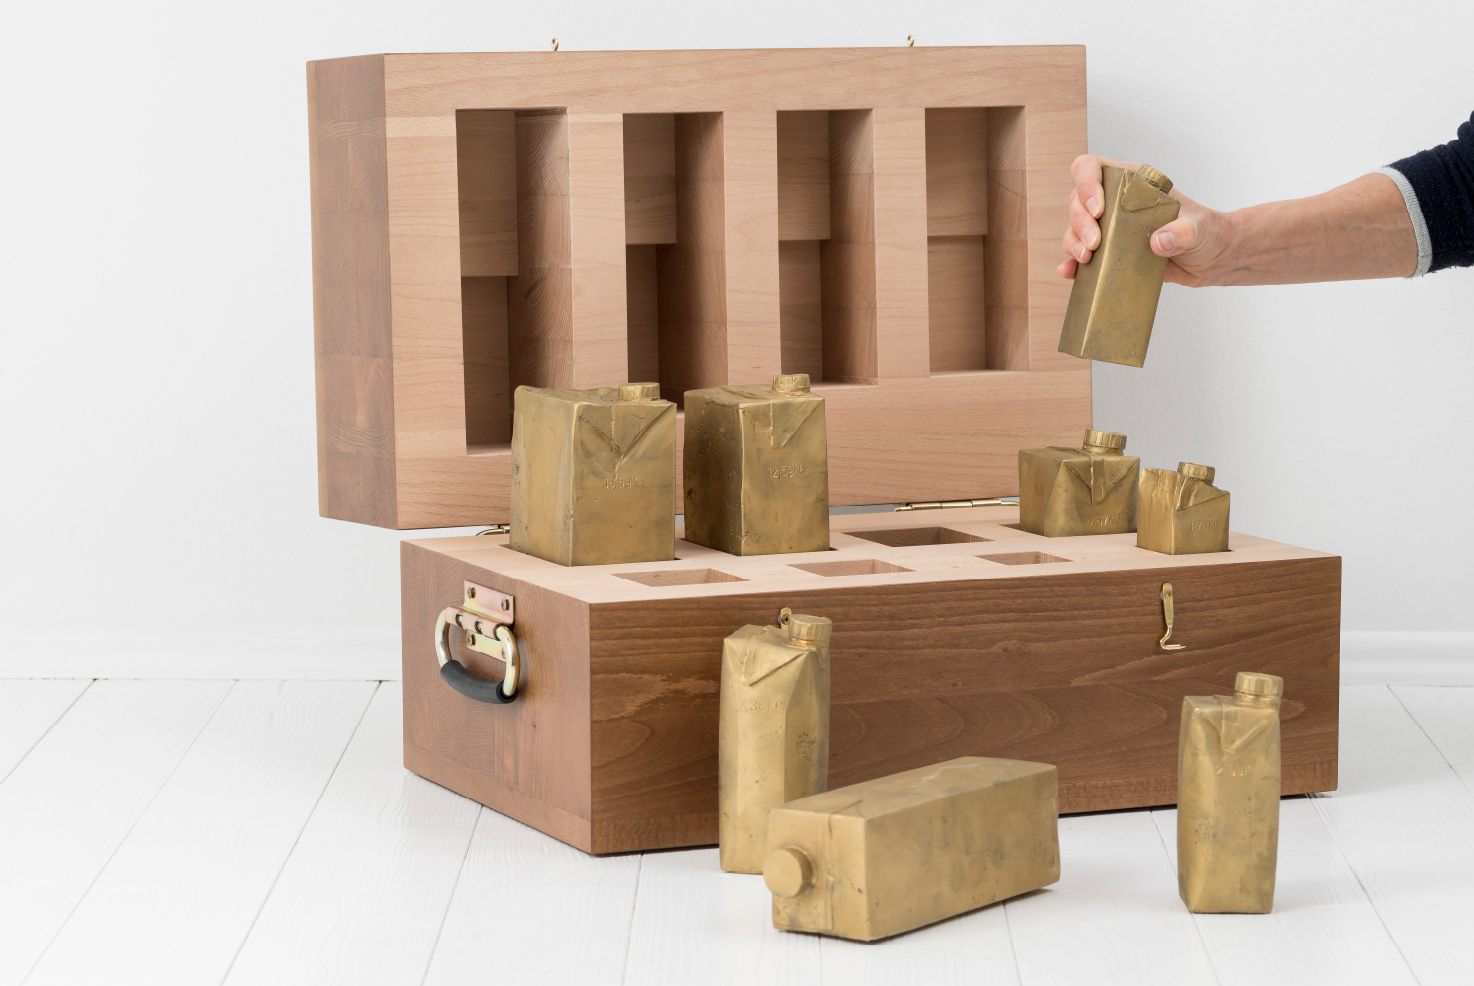 Objekte von Josephine Riemann: 8 Tetrapak-Verpackungen unterschiedlicher Größe, in Messing abgegossen in einem Vollholzkasten.